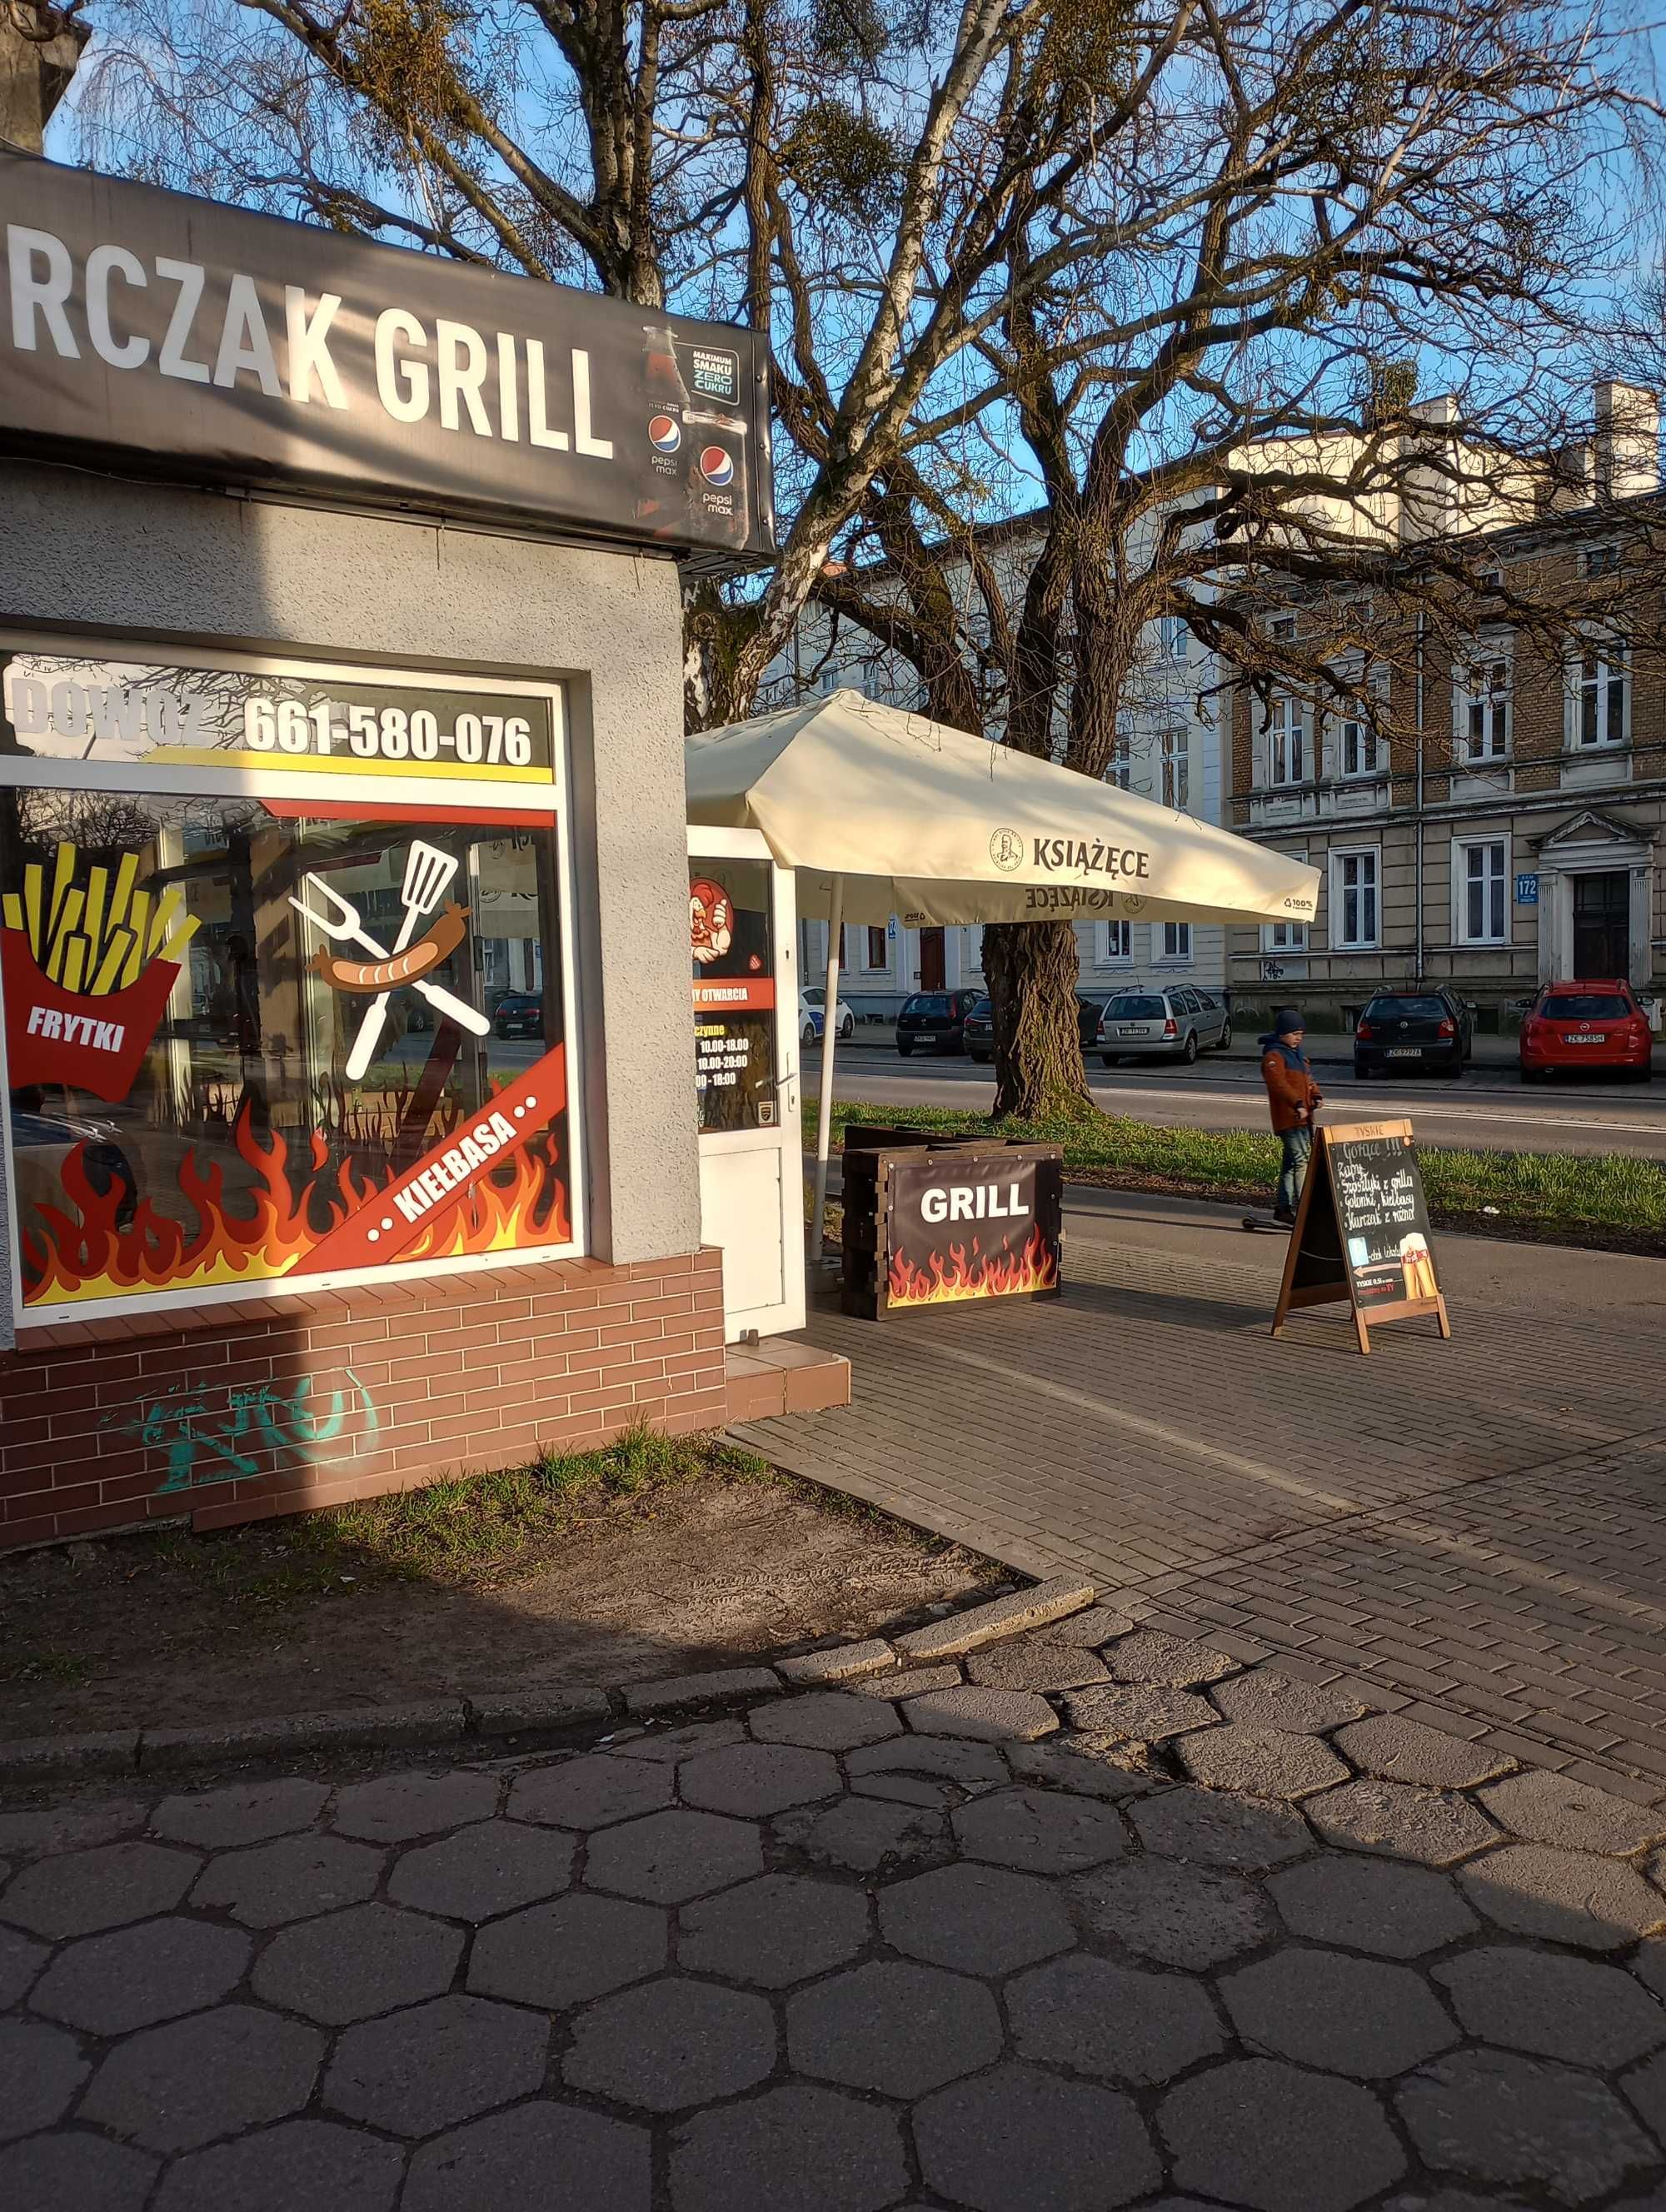 Lokal gastronomiczny, pizzeria, kebab, grill.